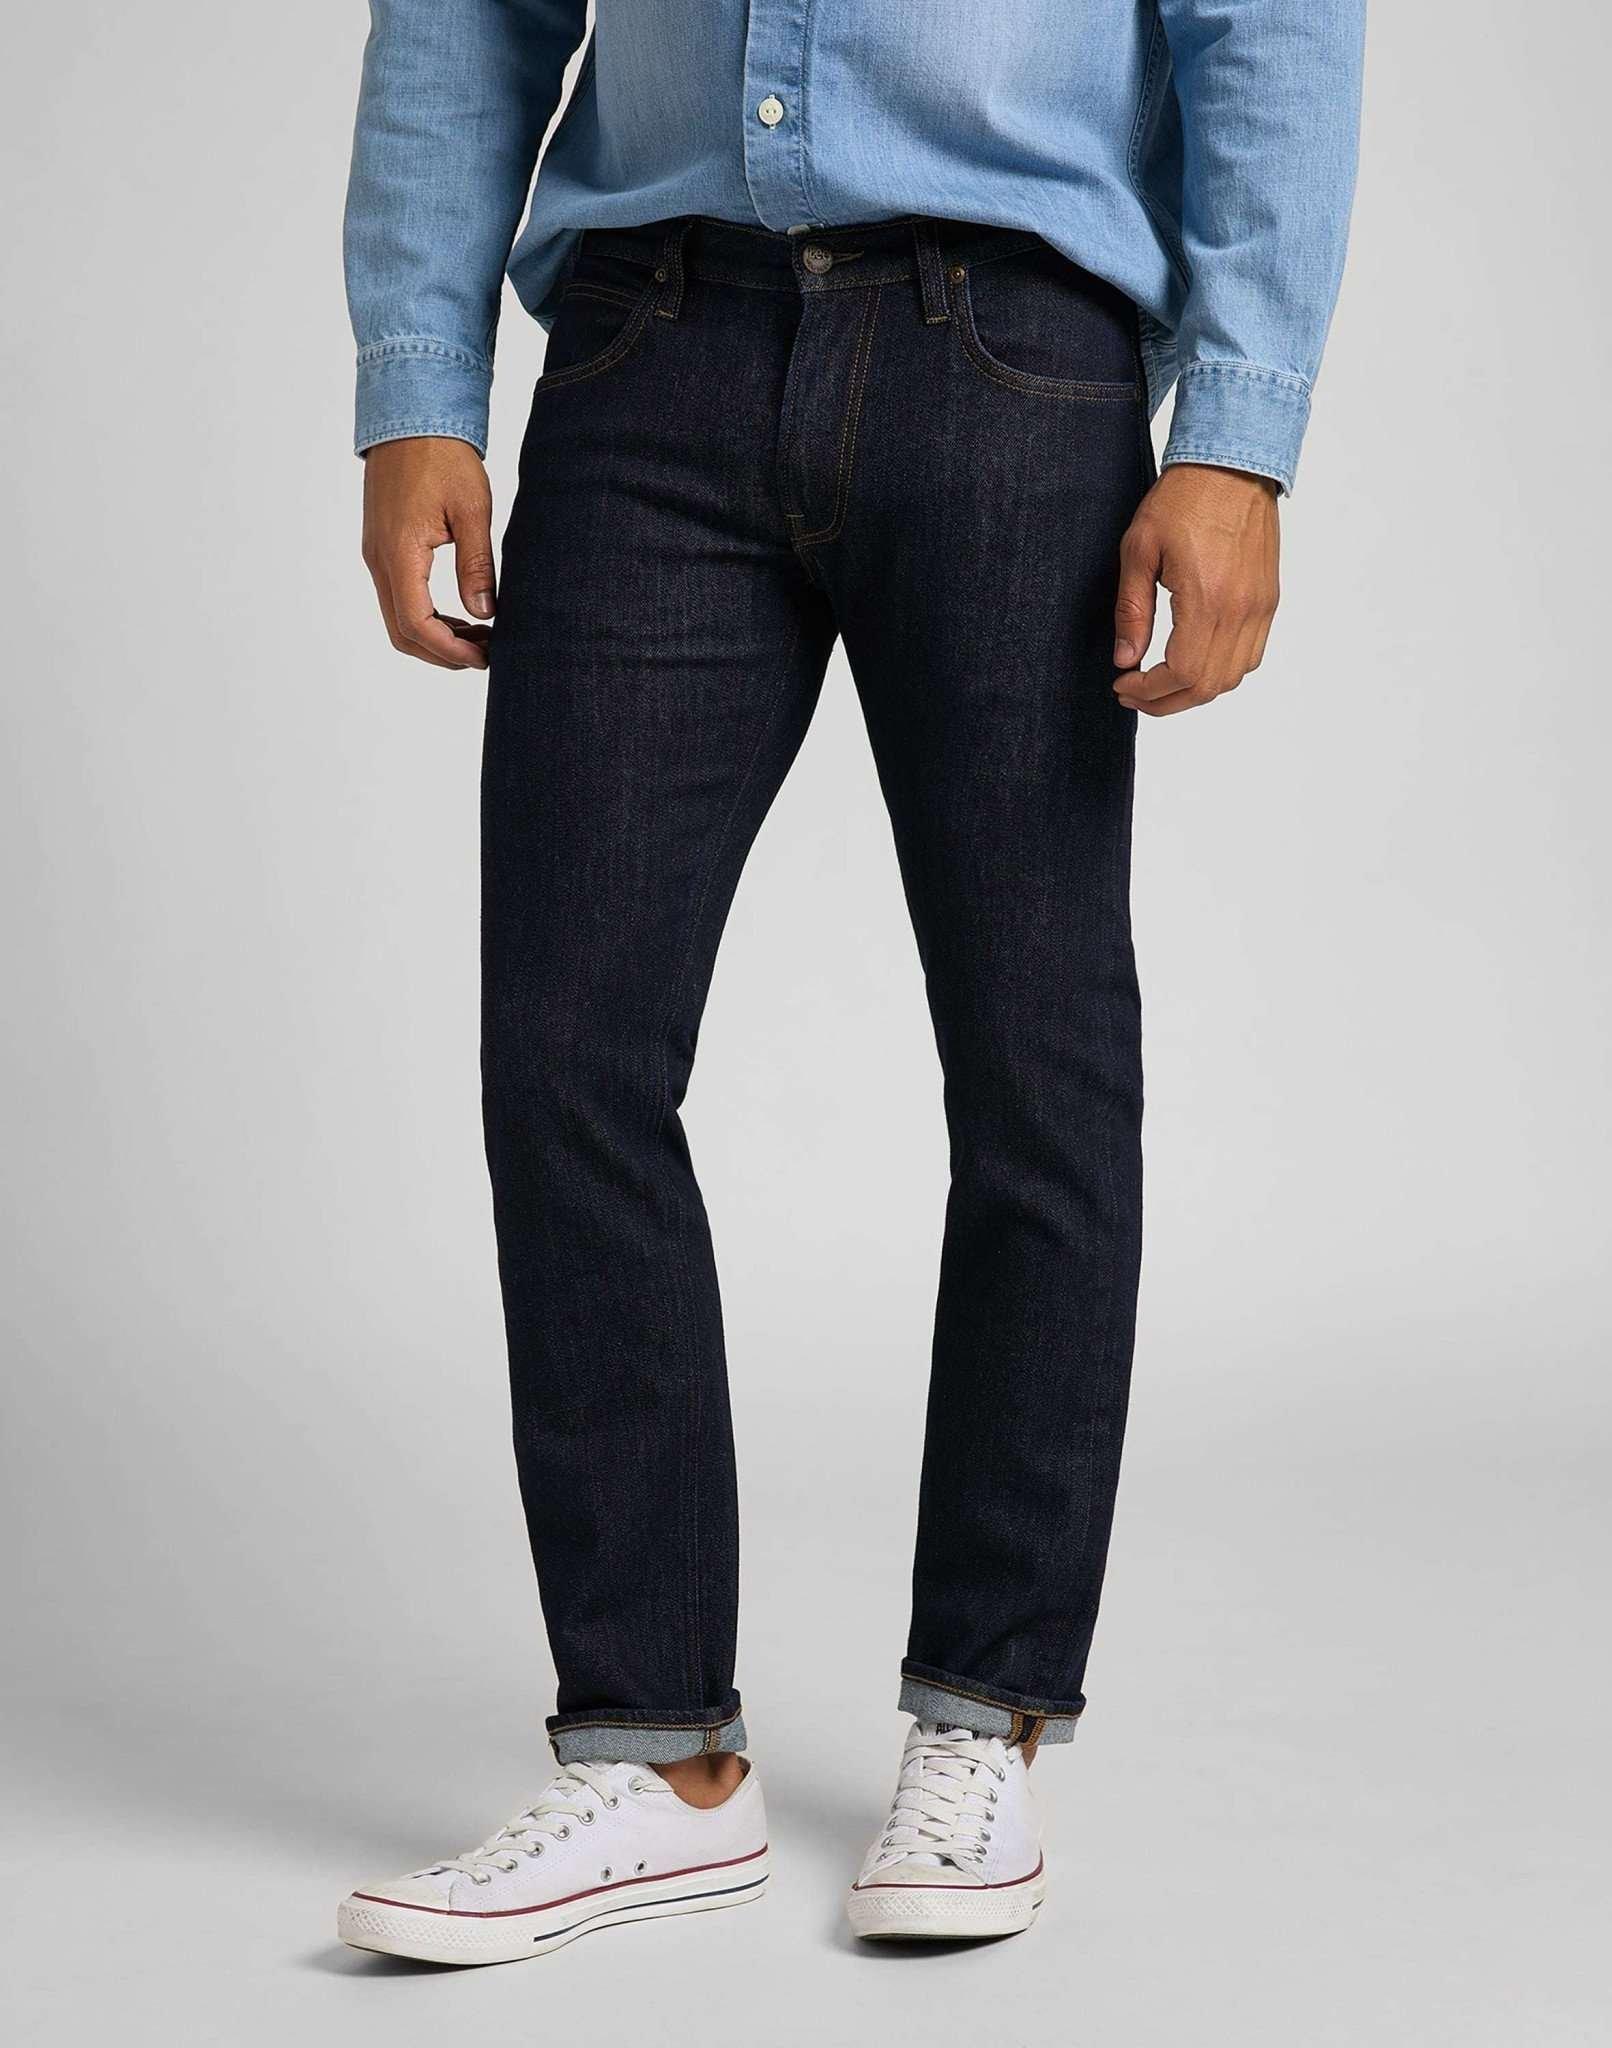 Jeans Straight Leg Daren Herren Blau Denim L32/W29 von Lee